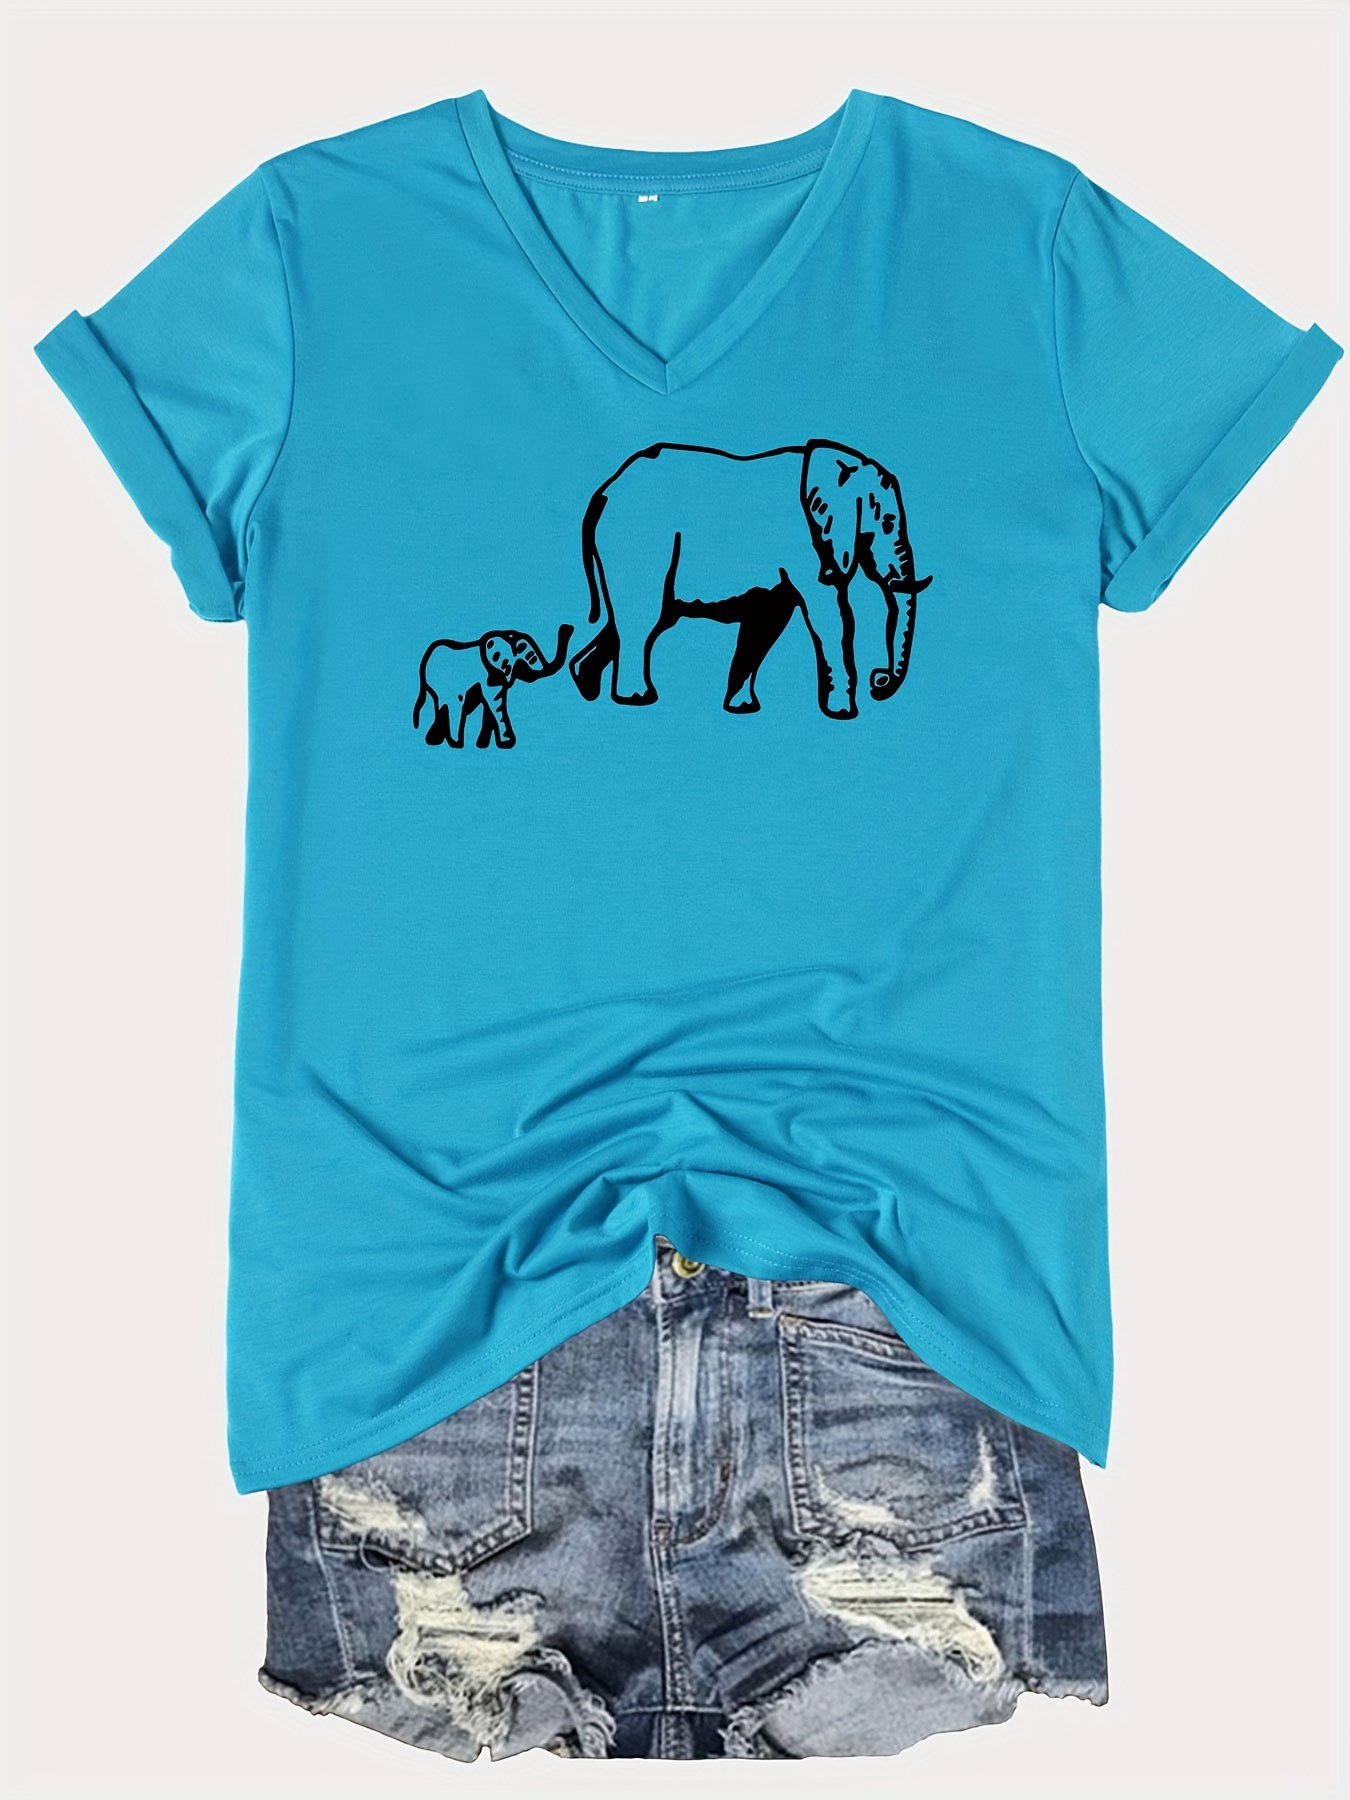 Turquoise Elephant Shorts